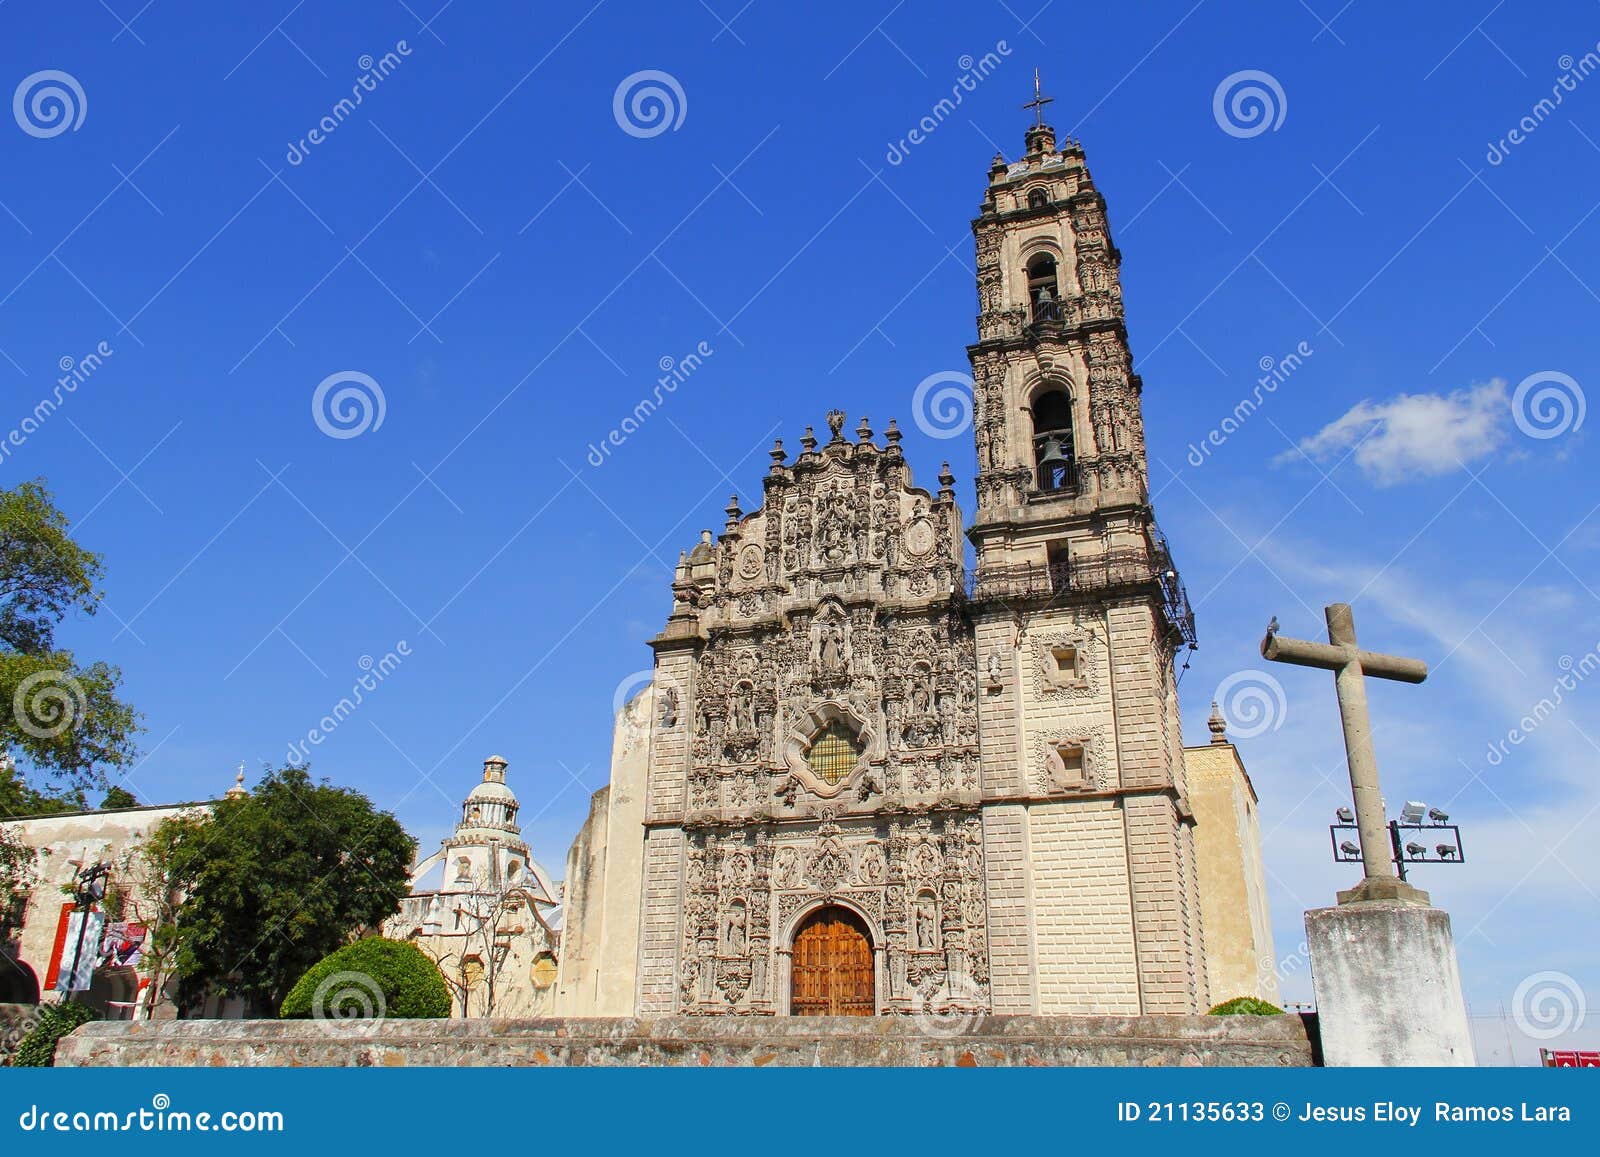 baroque church of the tepotzotlan convent in mexico iii